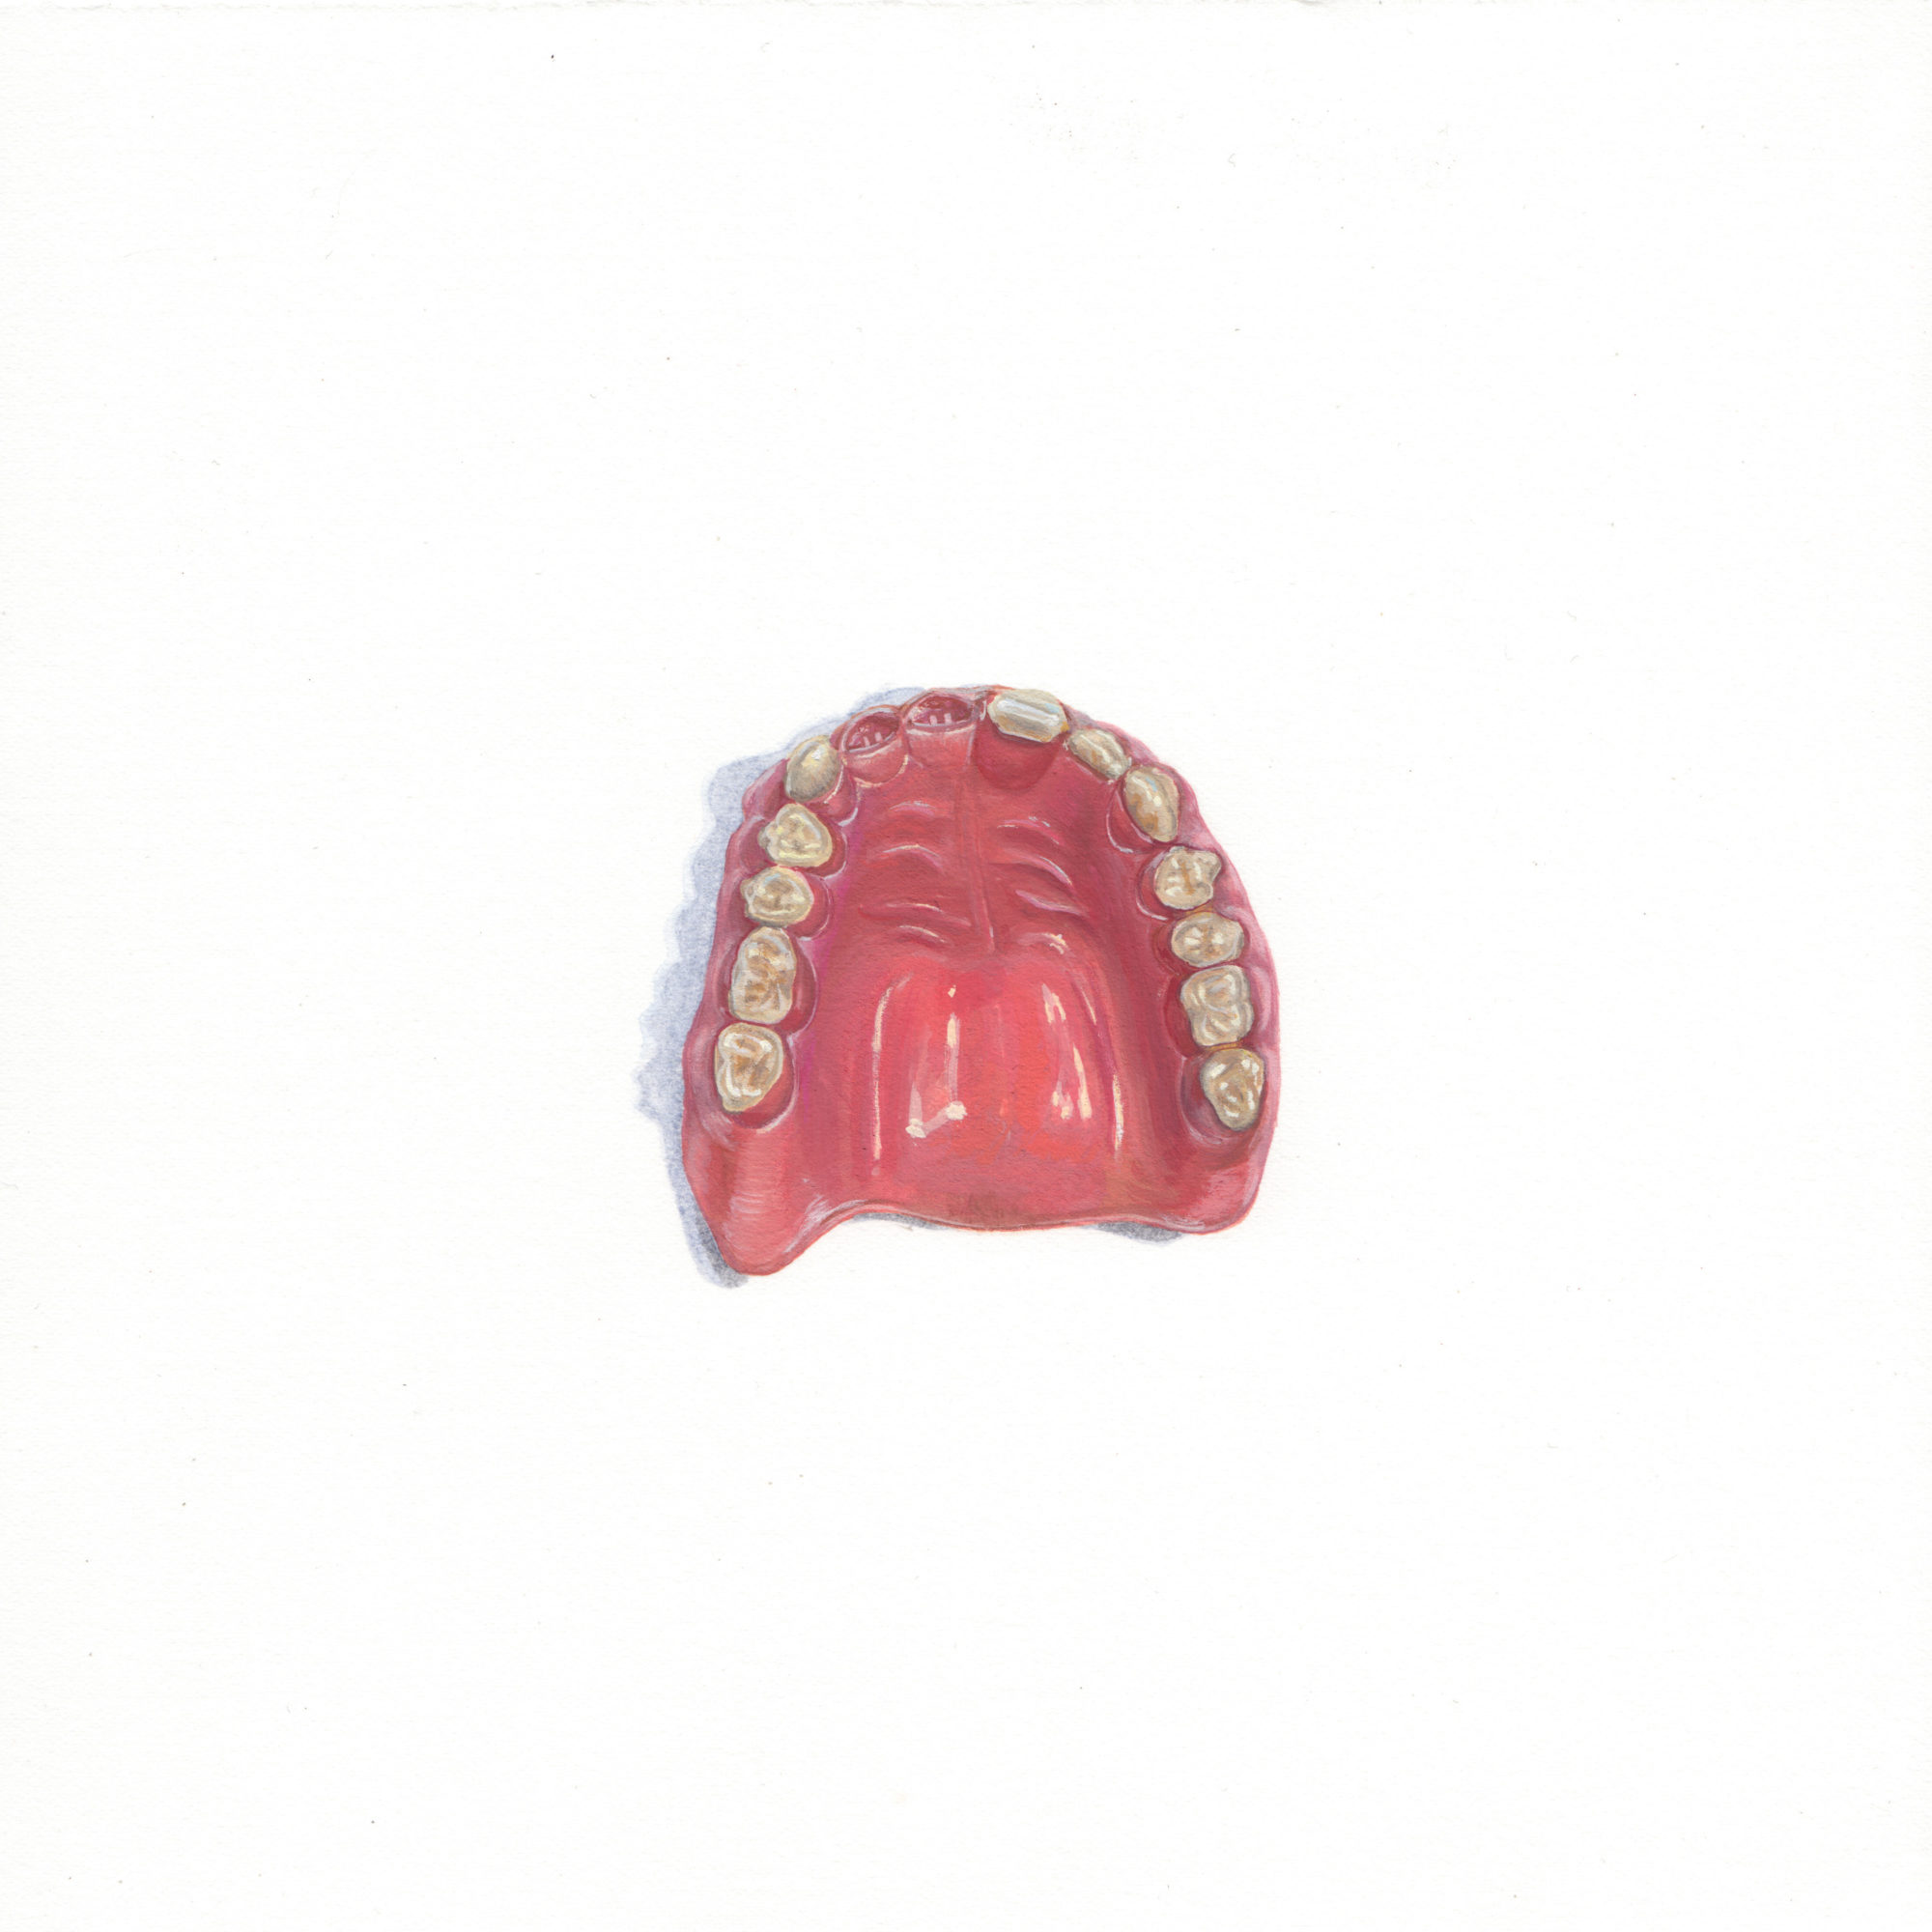 Apophenia: Denture